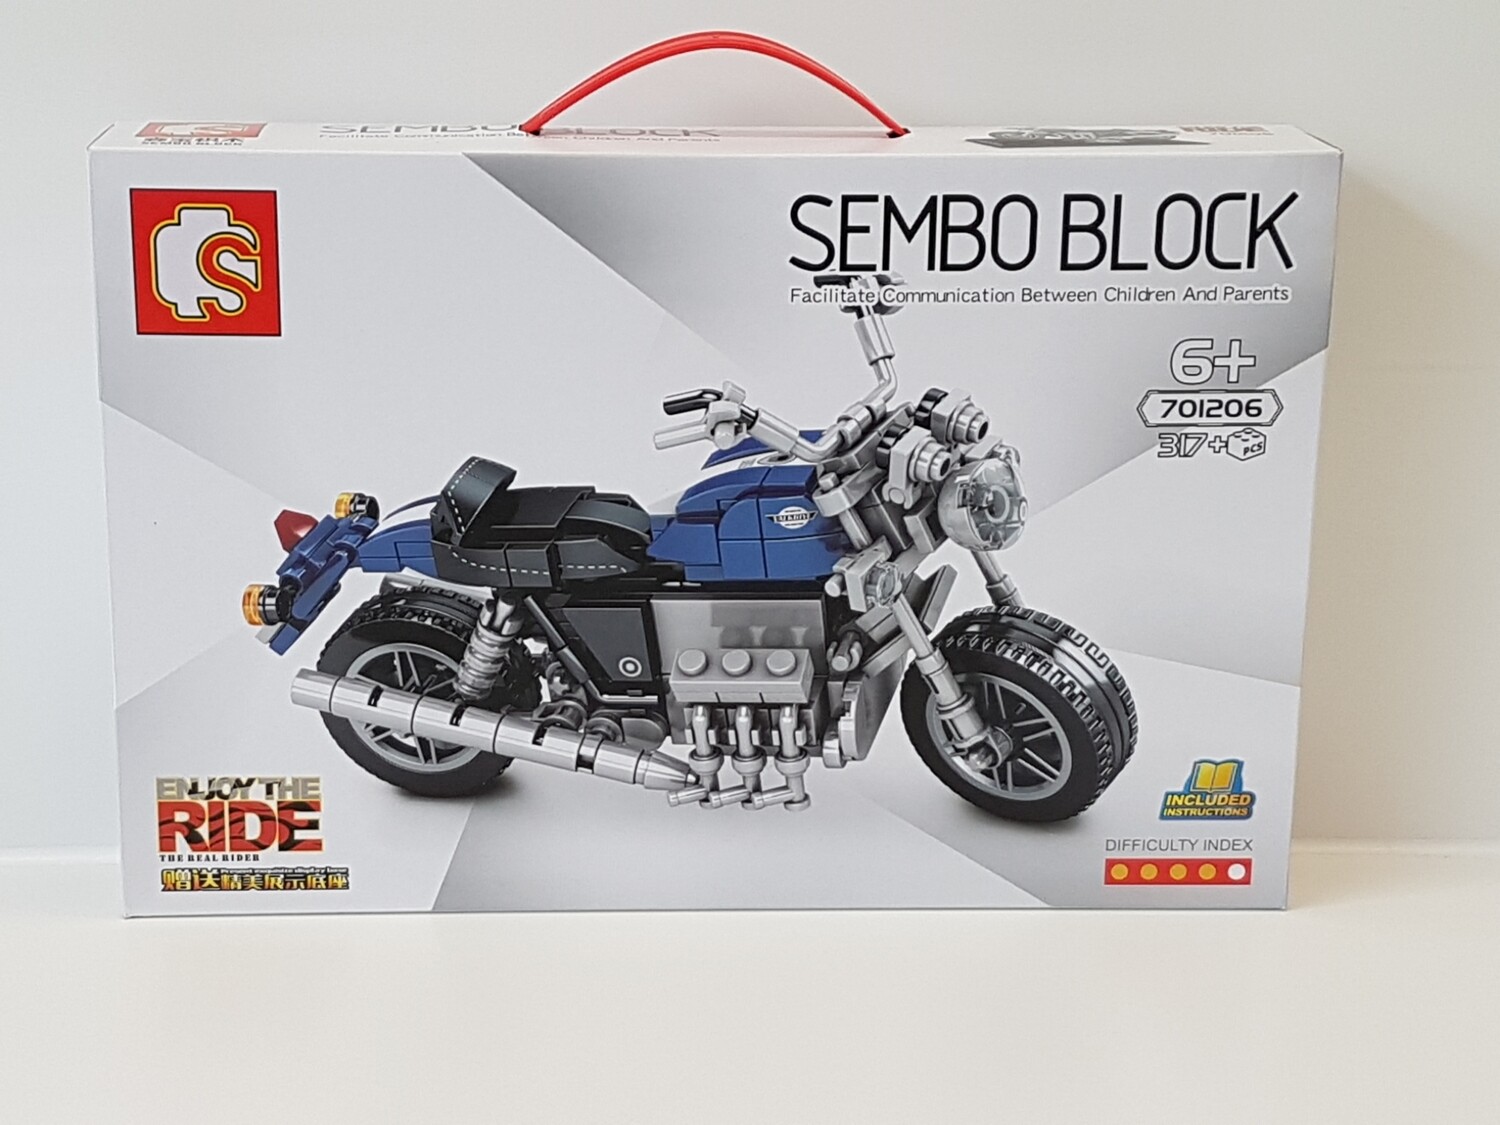 Sembo 701206 Motorrad auf Ständer Blau/Schwarz Neu und OVP